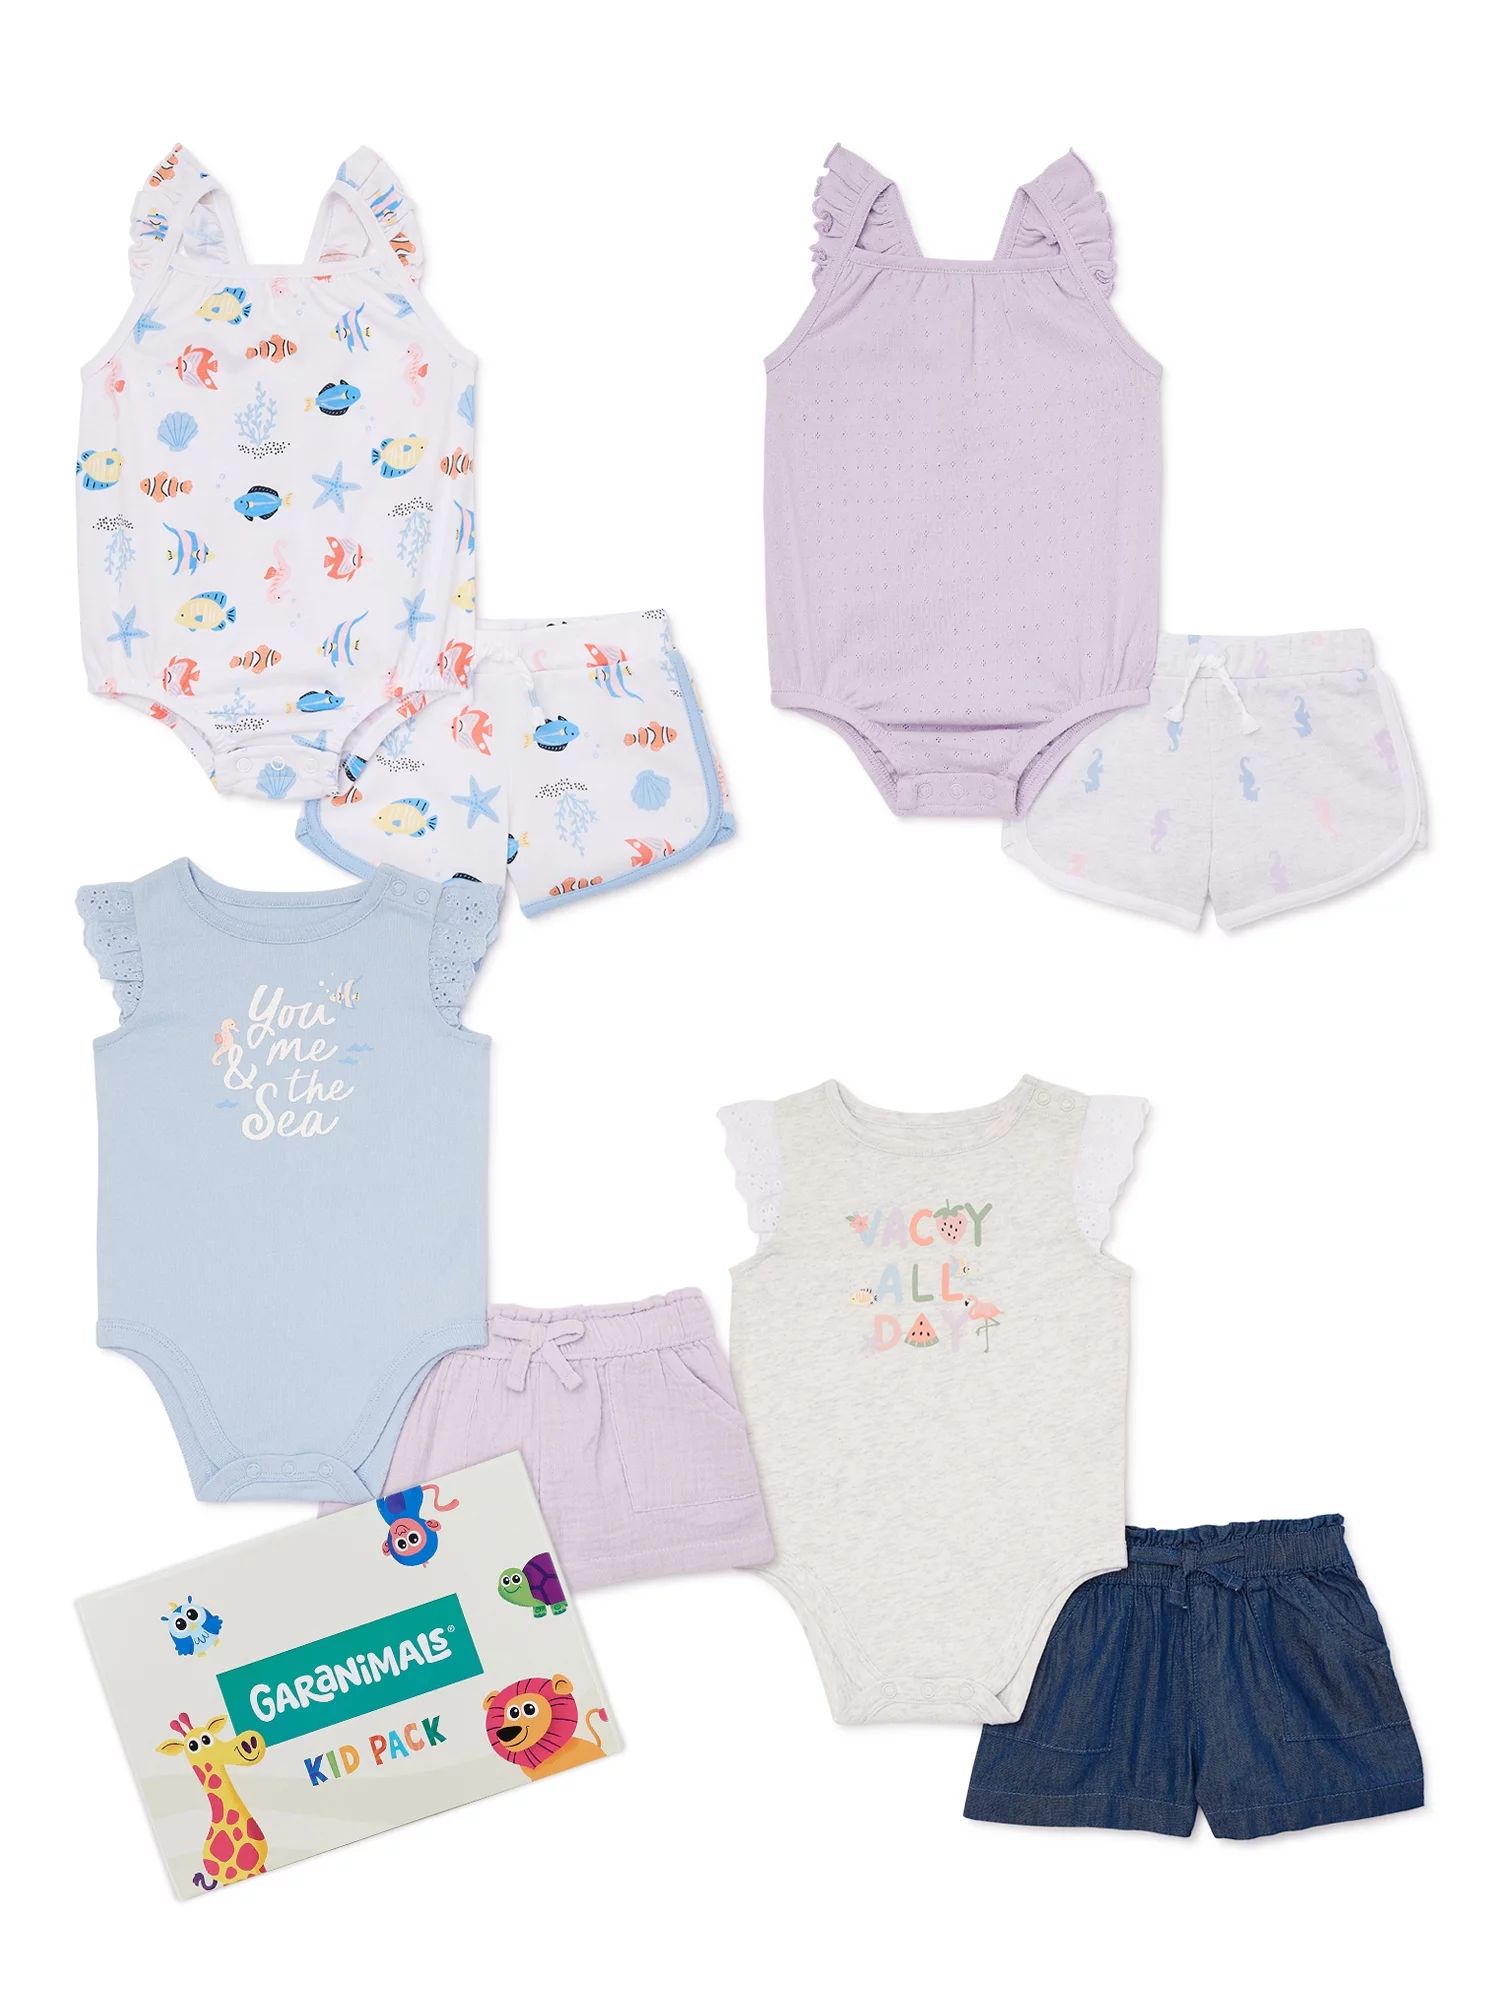 Garanimals Baby Girls Mix & Match Outfit Kid-Pack, 8-Piece, Sizes 0-24M | Walmart (US)